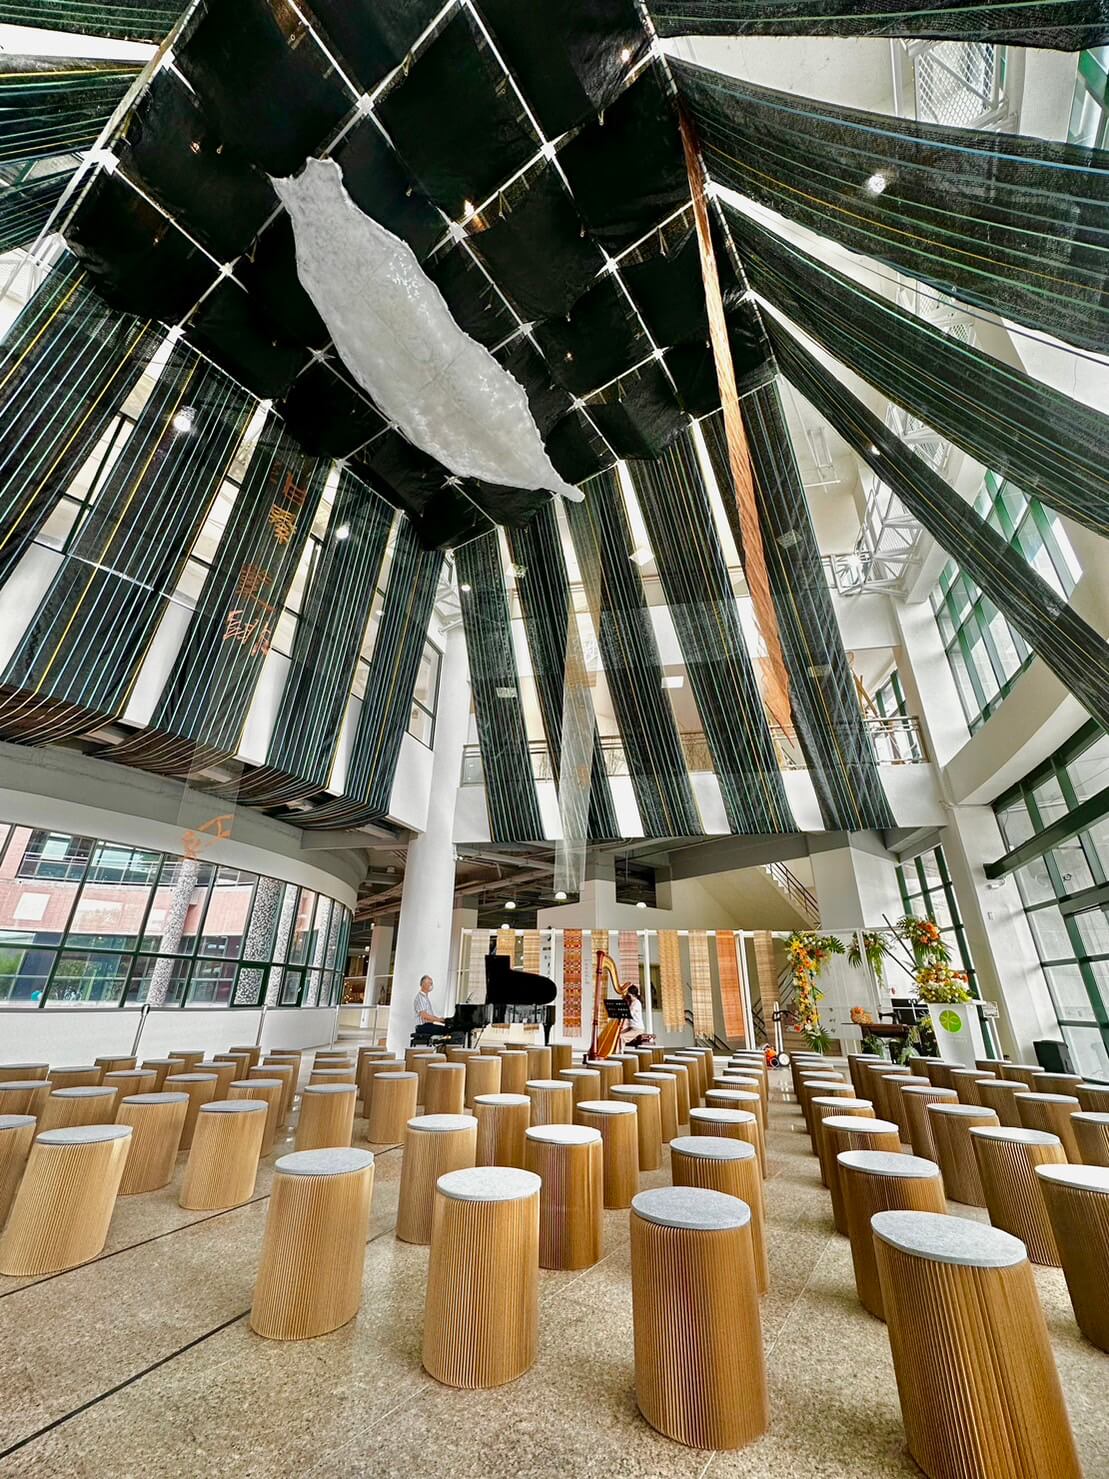 臺中纖維工藝博物館大廳天頂空間，正設置由策展人顏名宏所創作的〈臺灣雲〉裝置作品。圖 / 藝術與開放空間研究室提供